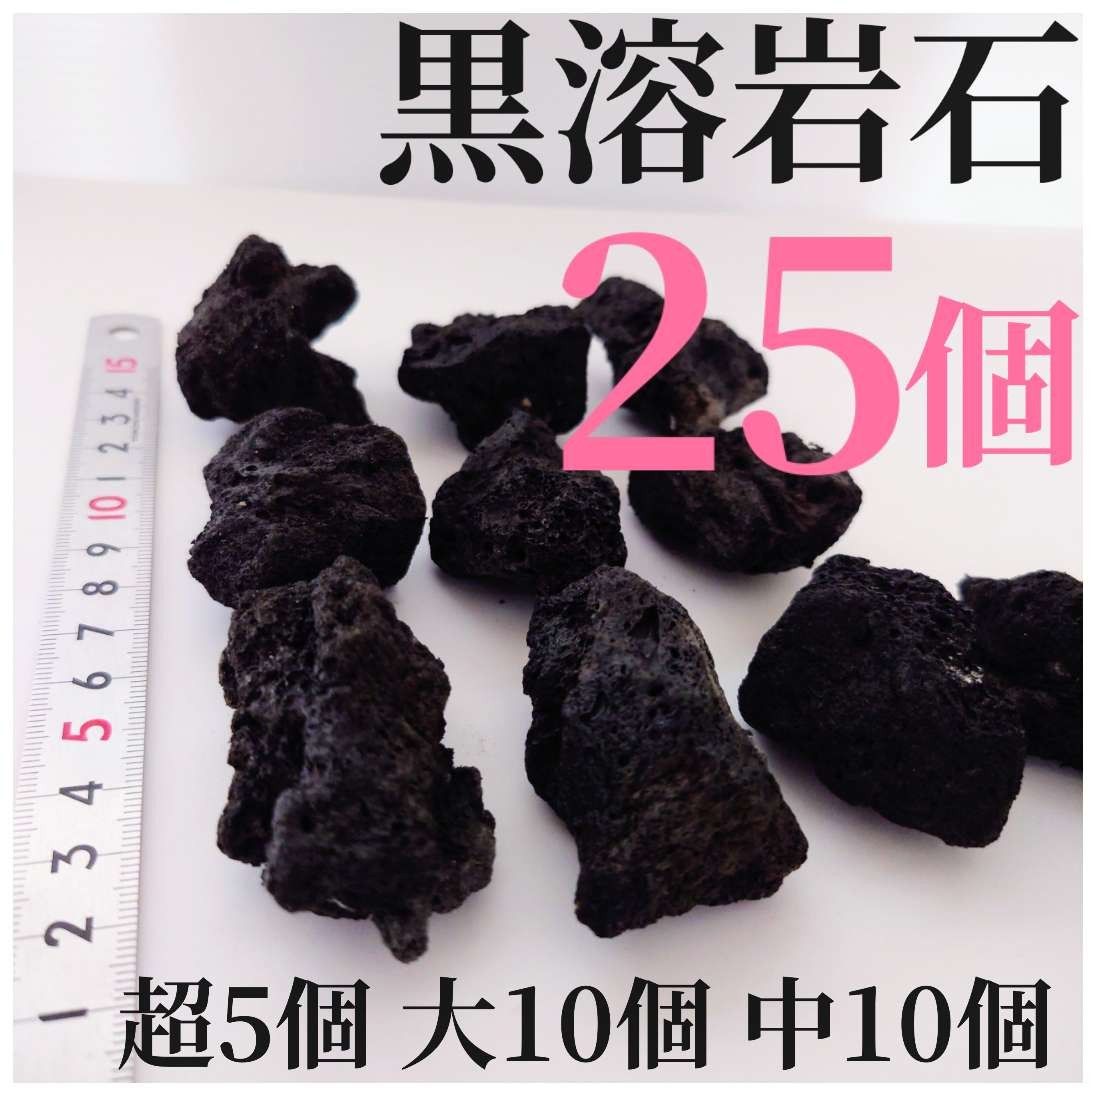 黒溶岩石 25個 【超5大10中10】☆アクアリウム、テラリウム、苔リウムに最適